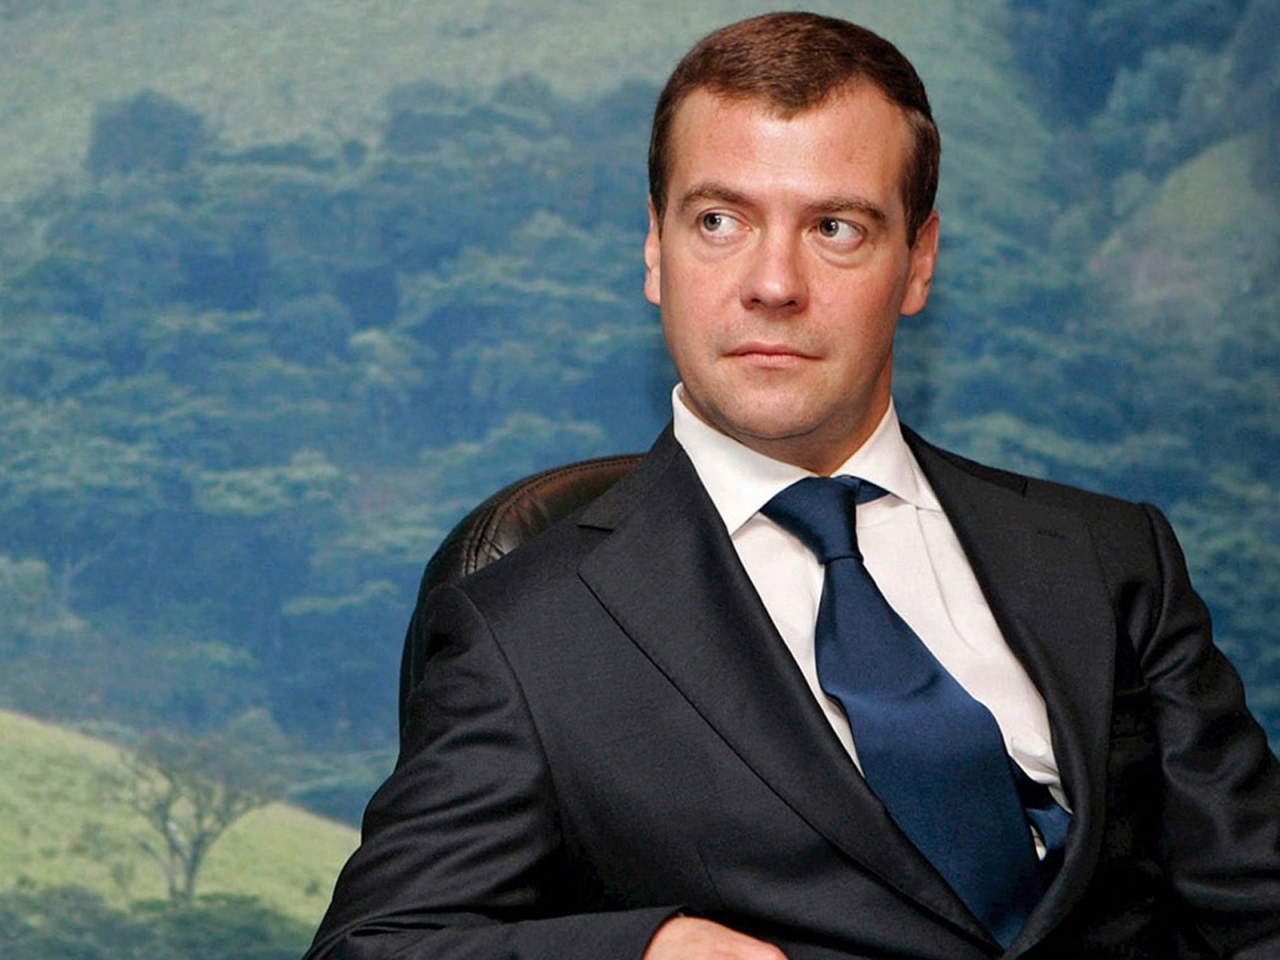 Dmitry Medvedev for 1280 x 960 resolution